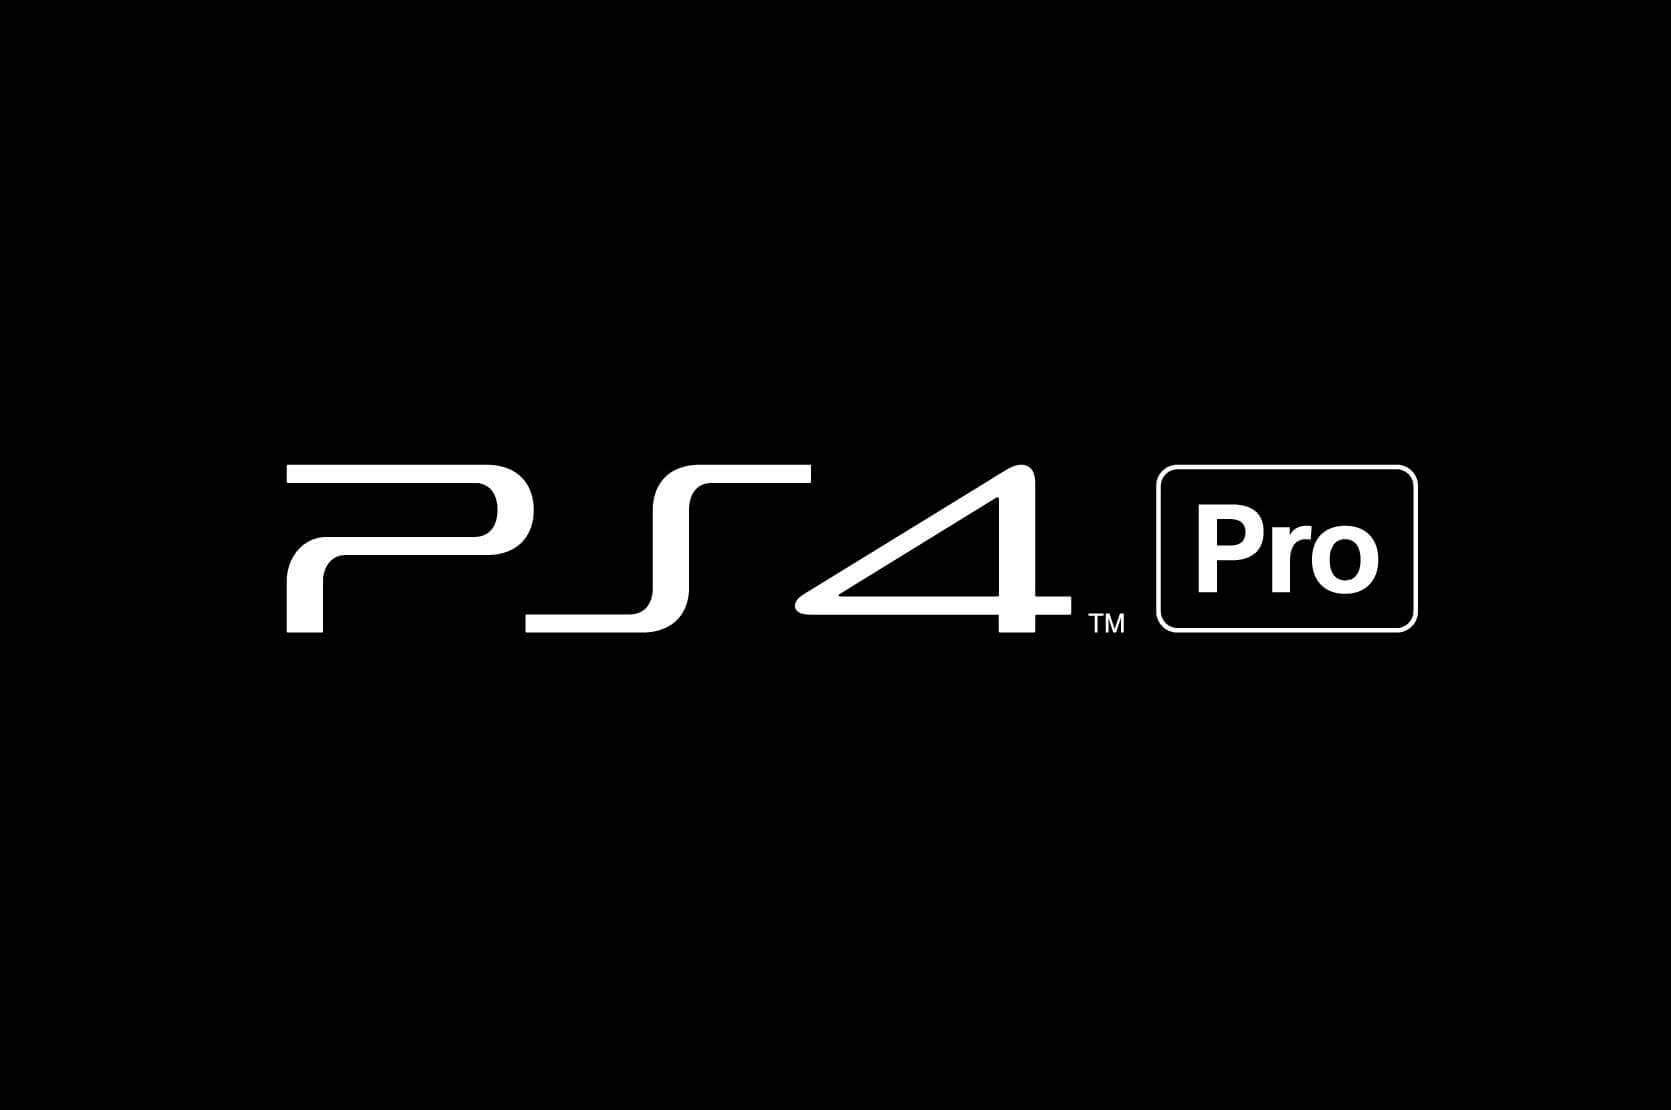 Ps4 скрывать. Sony PLAYSTATION 4 logo. Sony 4 Pro лого. PLAYSTATION надпись. Ps4 надпись.